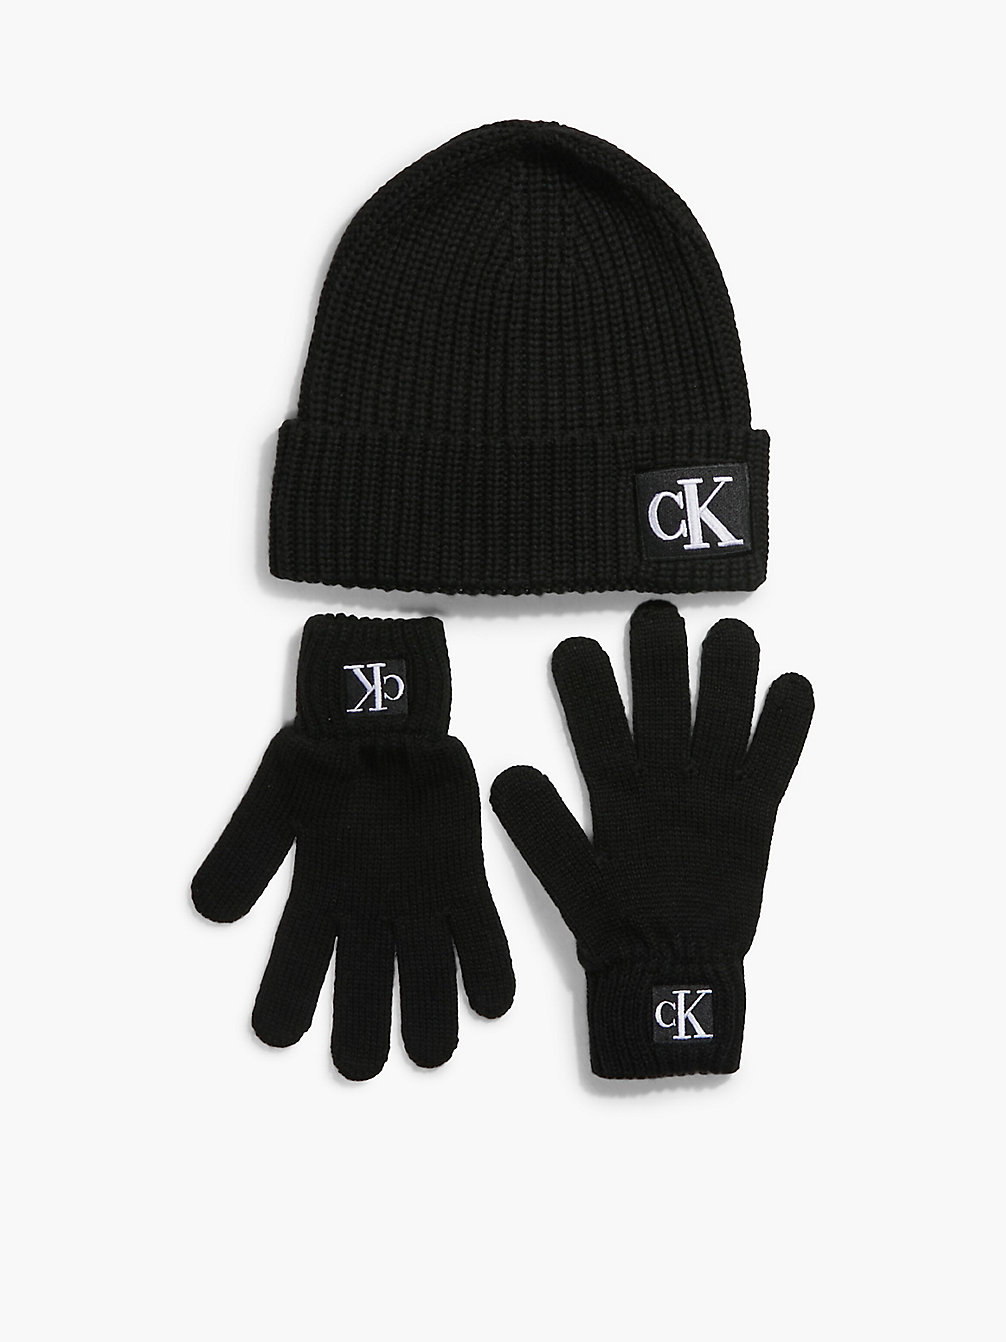 CK BLACK > Unisex Set Aus Handschuhen Und Mütze > undefined kids unisex - Calvin Klein